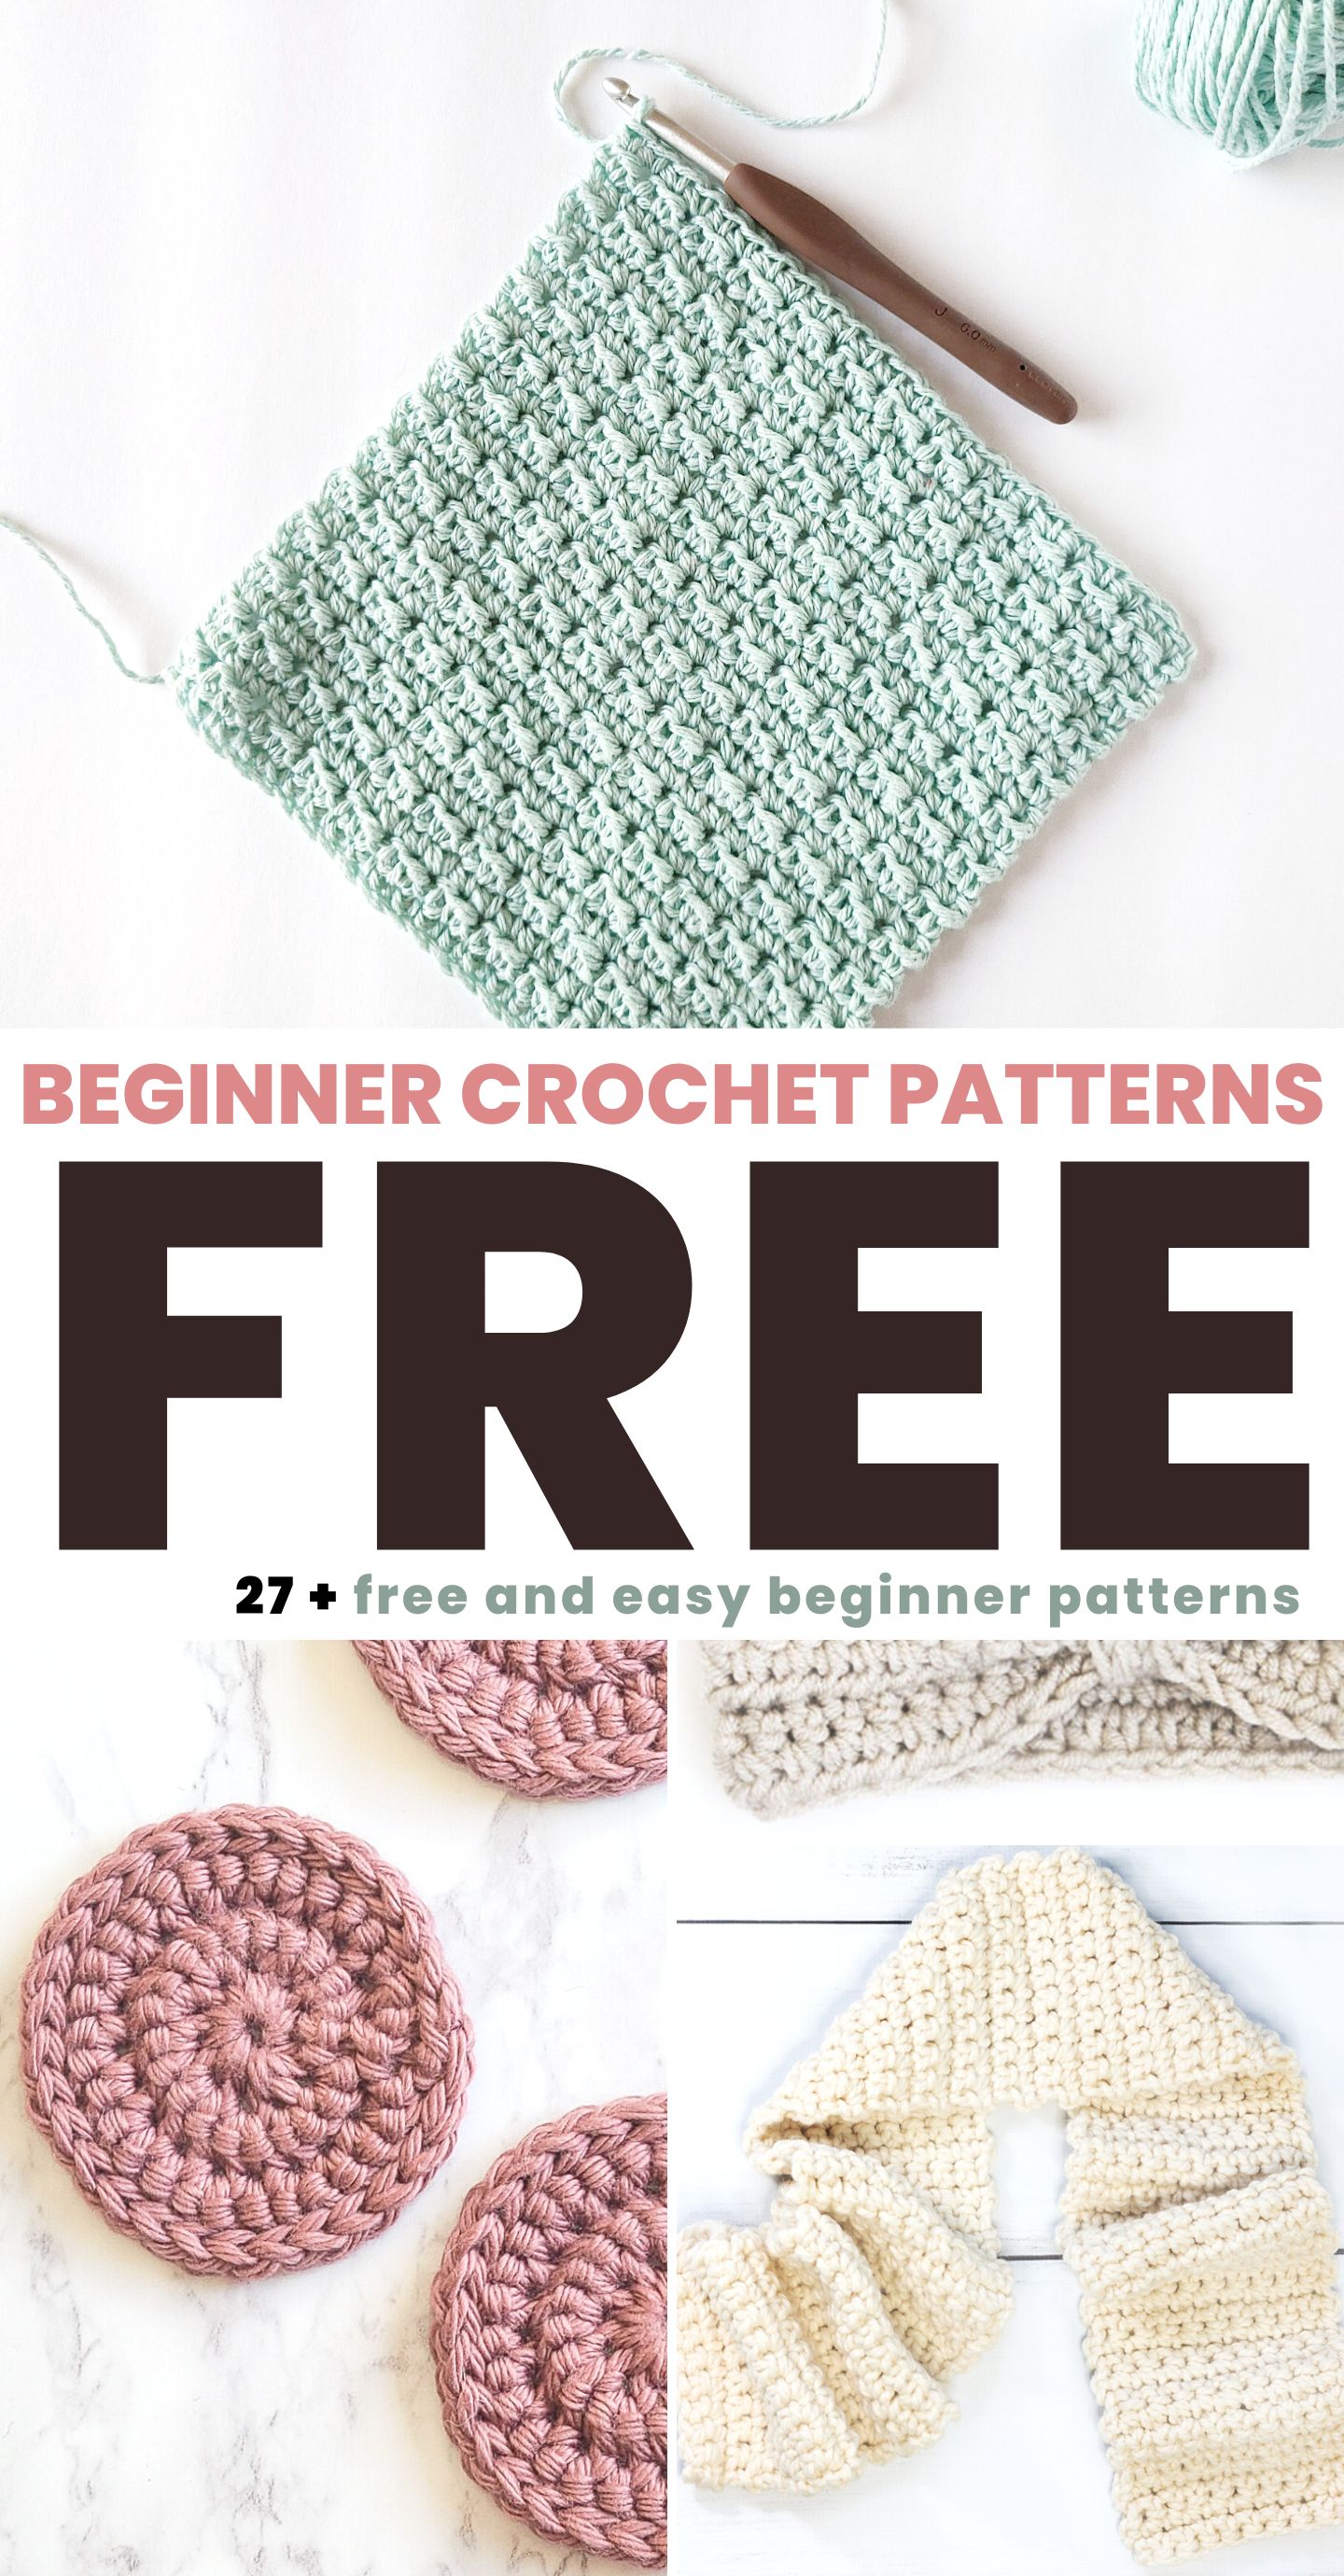 https://easycrochet.com/wp-content/uploads/2023/03/Beginner-Crochet-Patterns-1.jpg